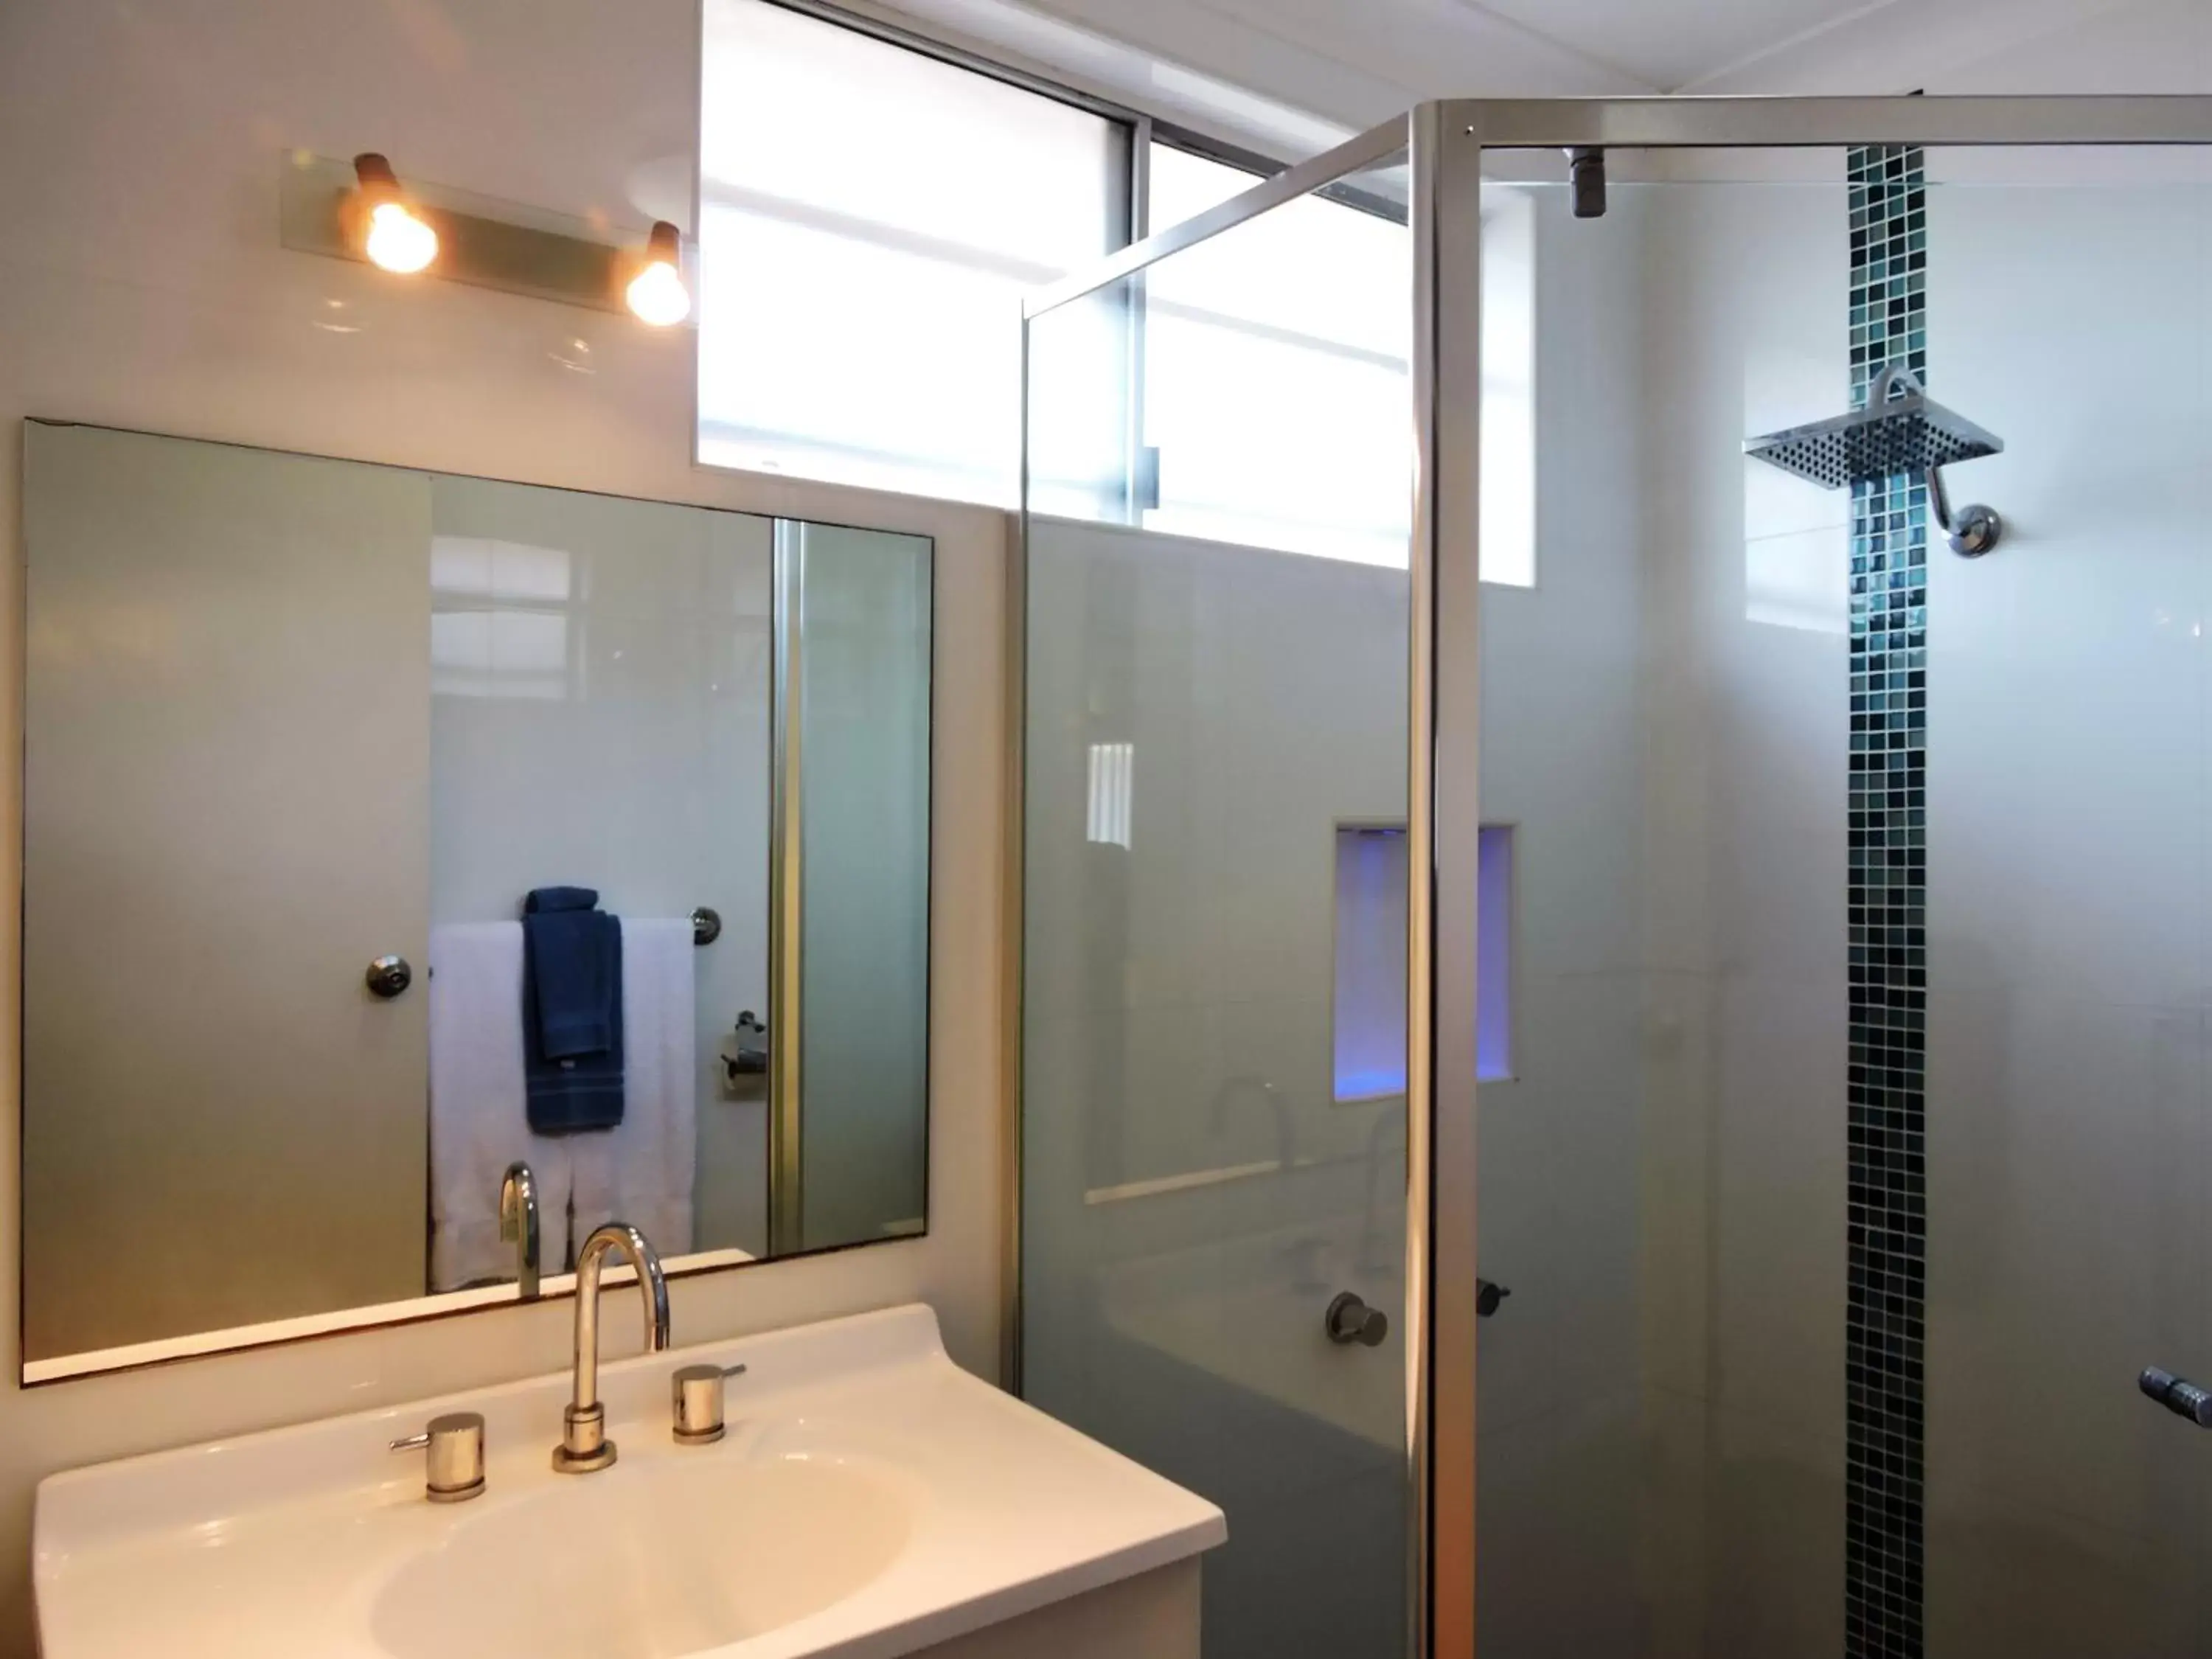 Shower, Bathroom in Tweed Heads Vegas Motel